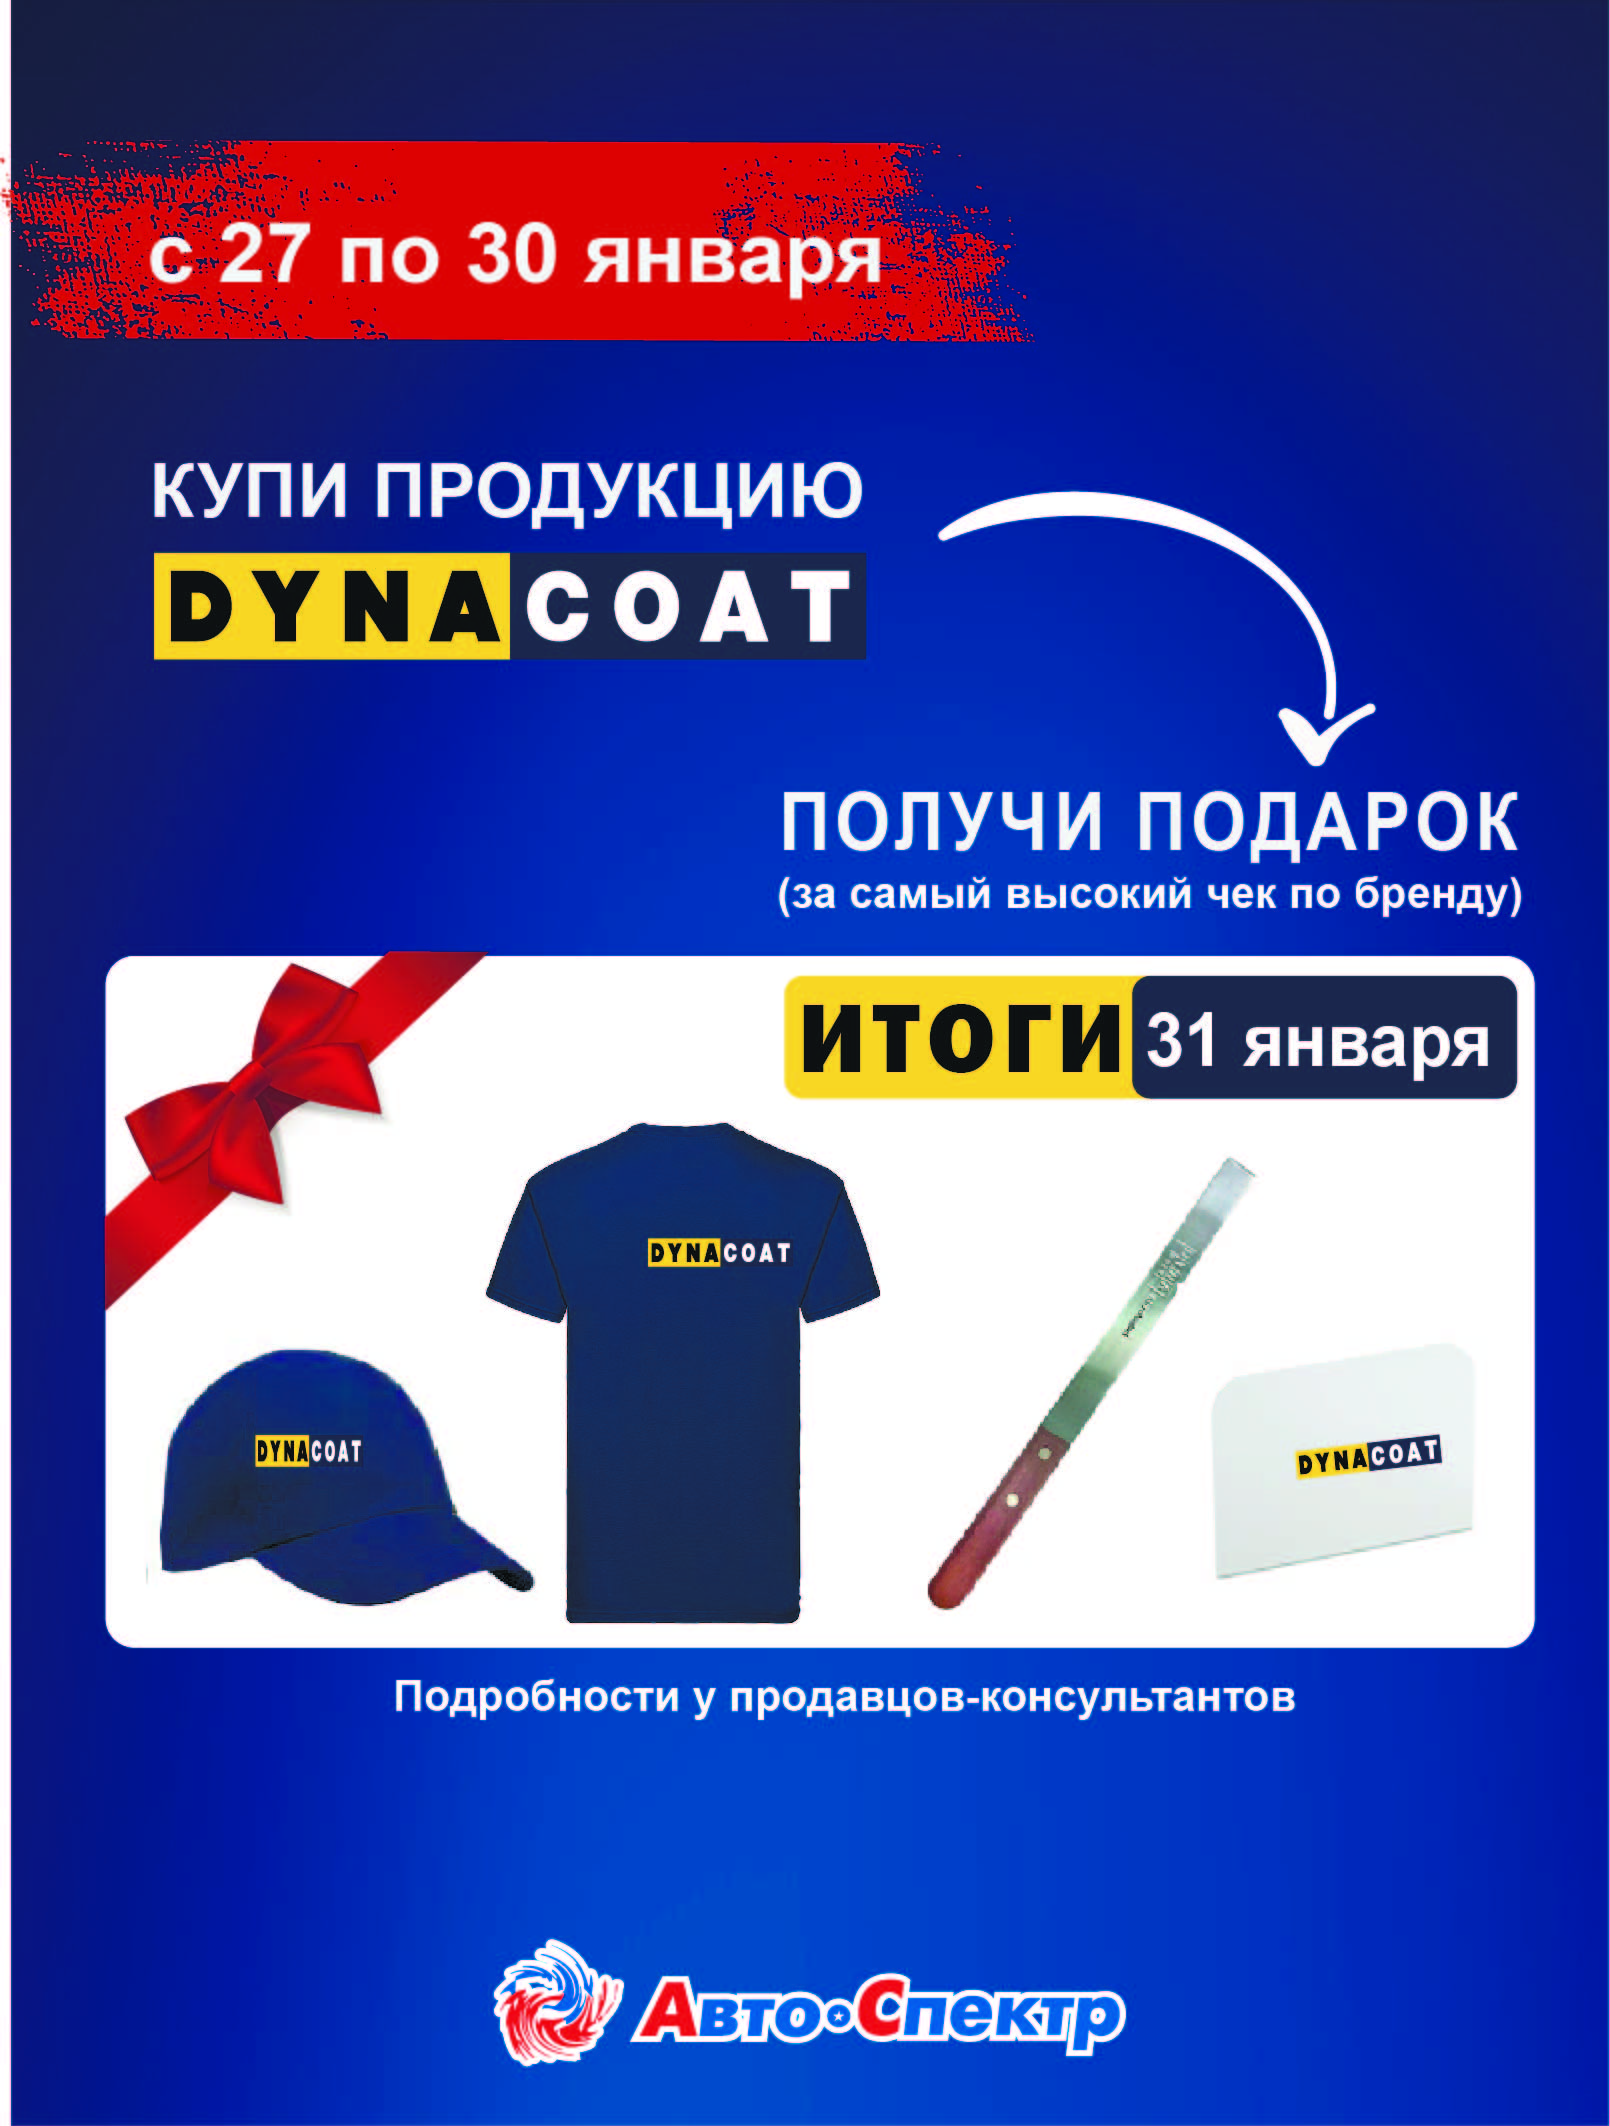 Покупай Dynacoat в магазинах розничной сети- получи подарок за самый высокий чек по бренду